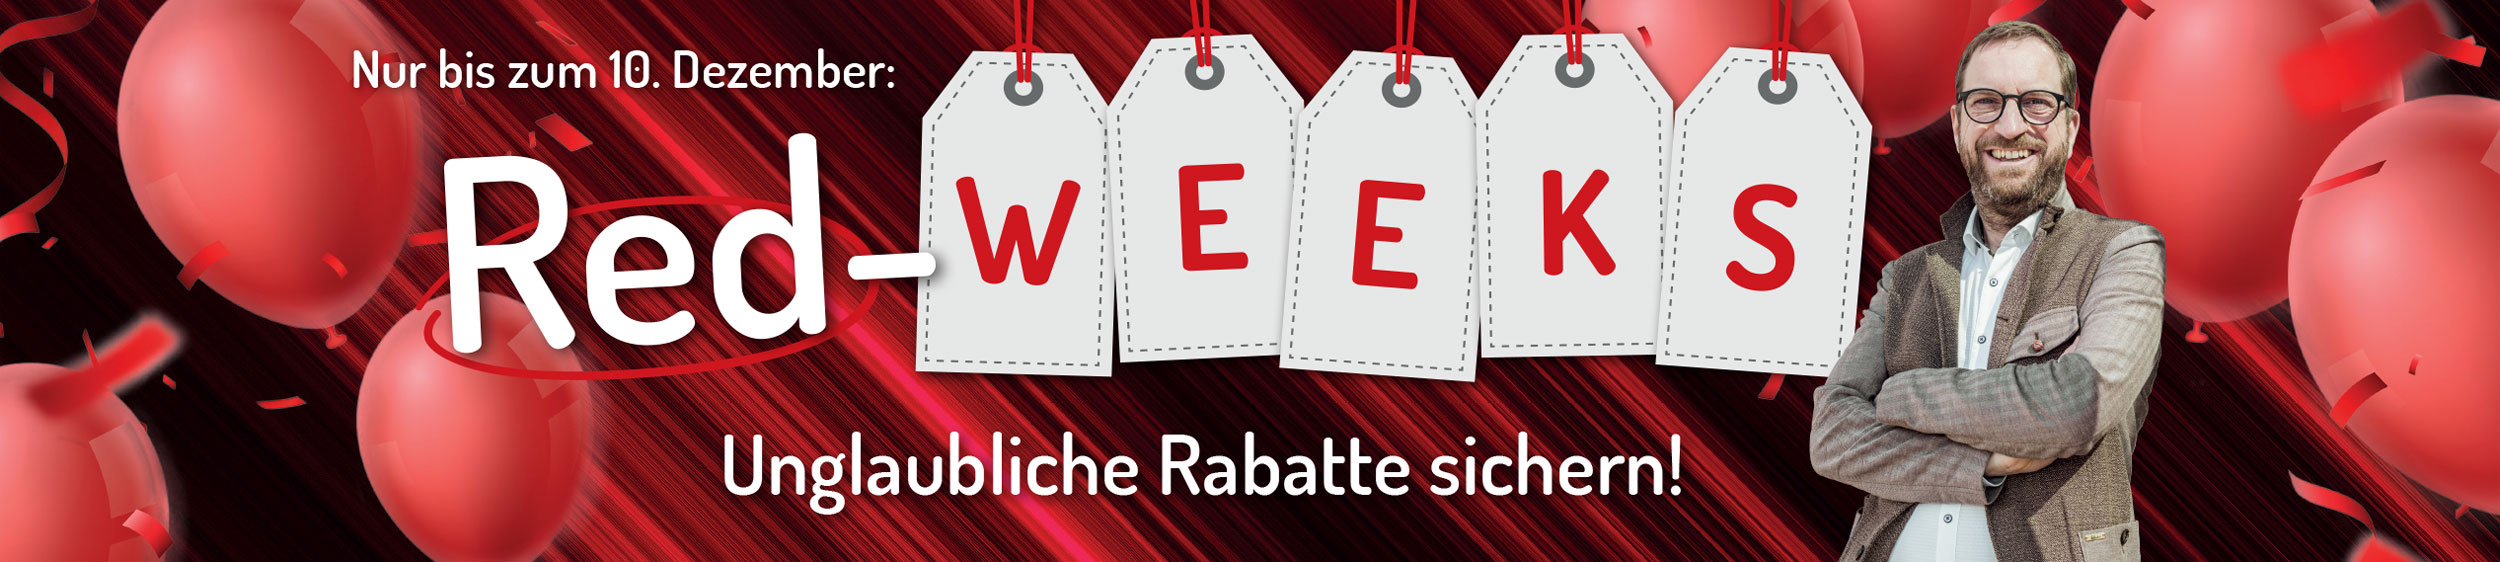 Nur bis zum 10. Dezember: Red-Weeks bei speedy - unglaubliche Rabatte sichern!